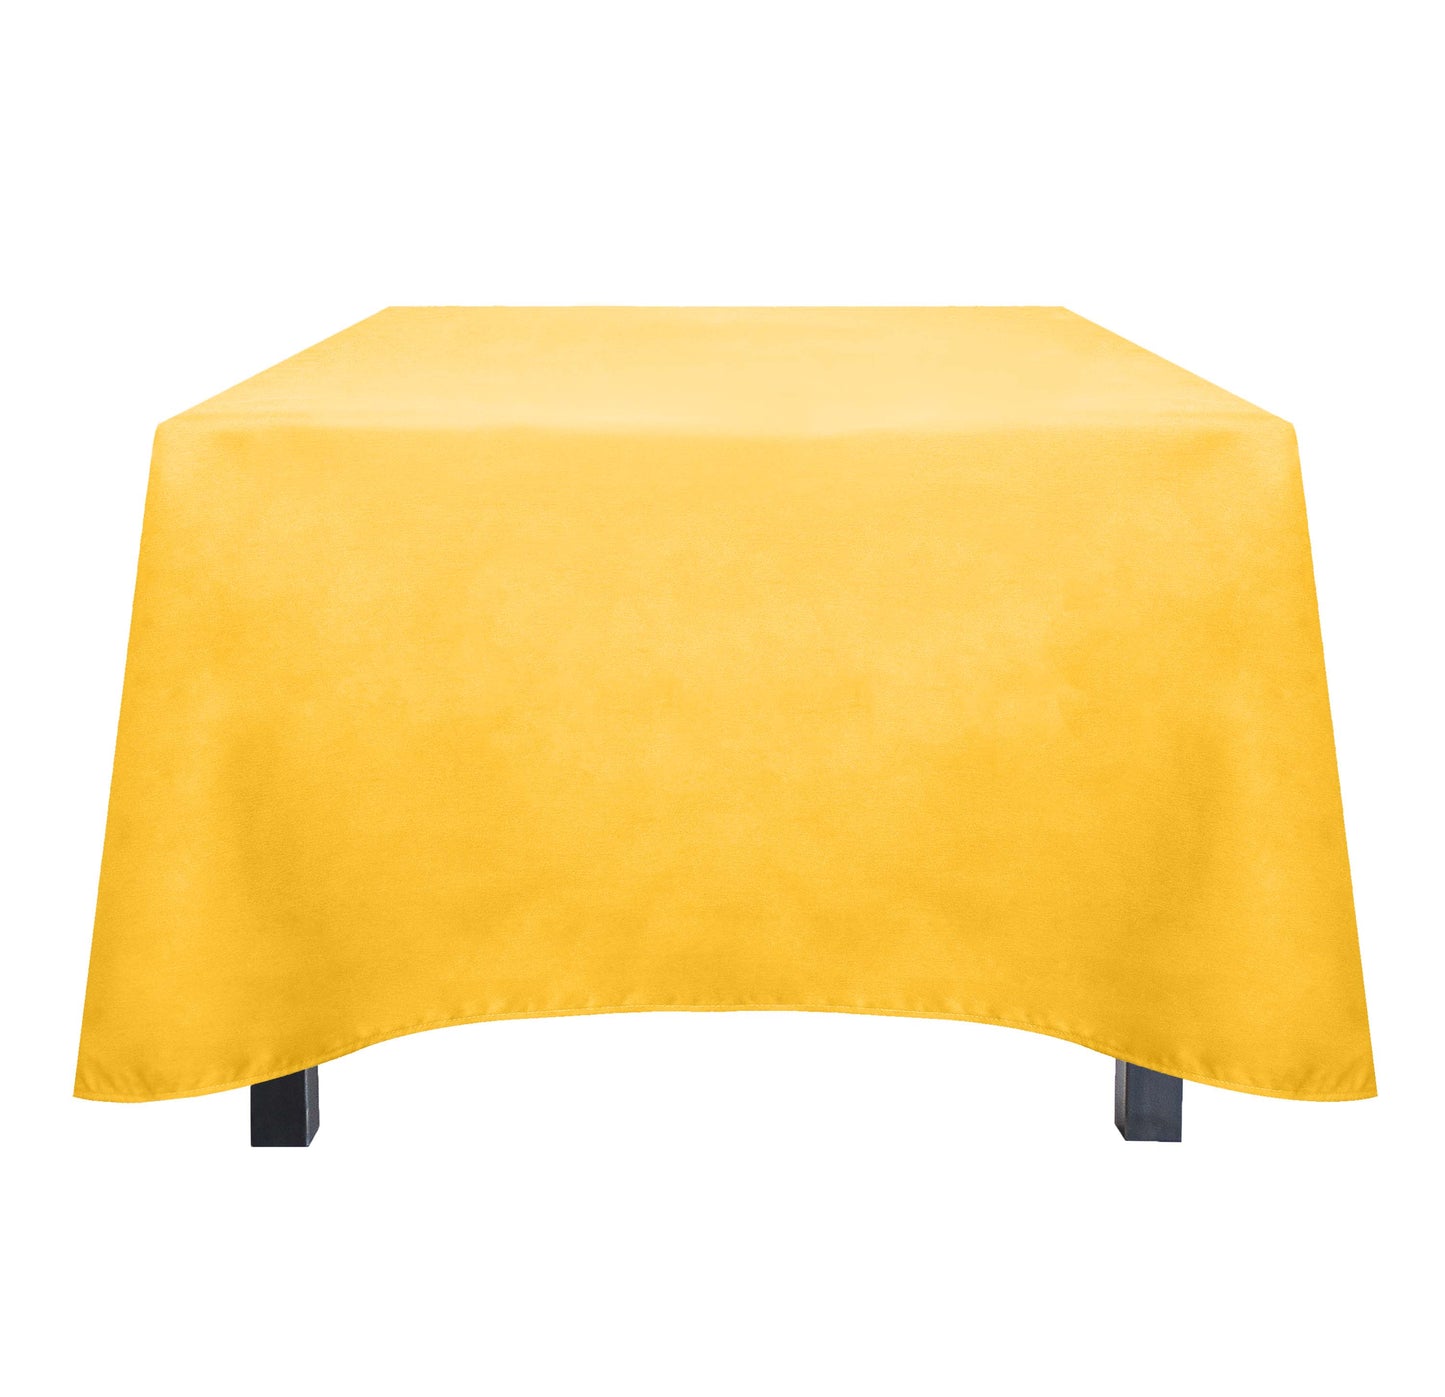 Tablecloth, Caress, 53x53 inch, Rectangle, 48 pcs/pk